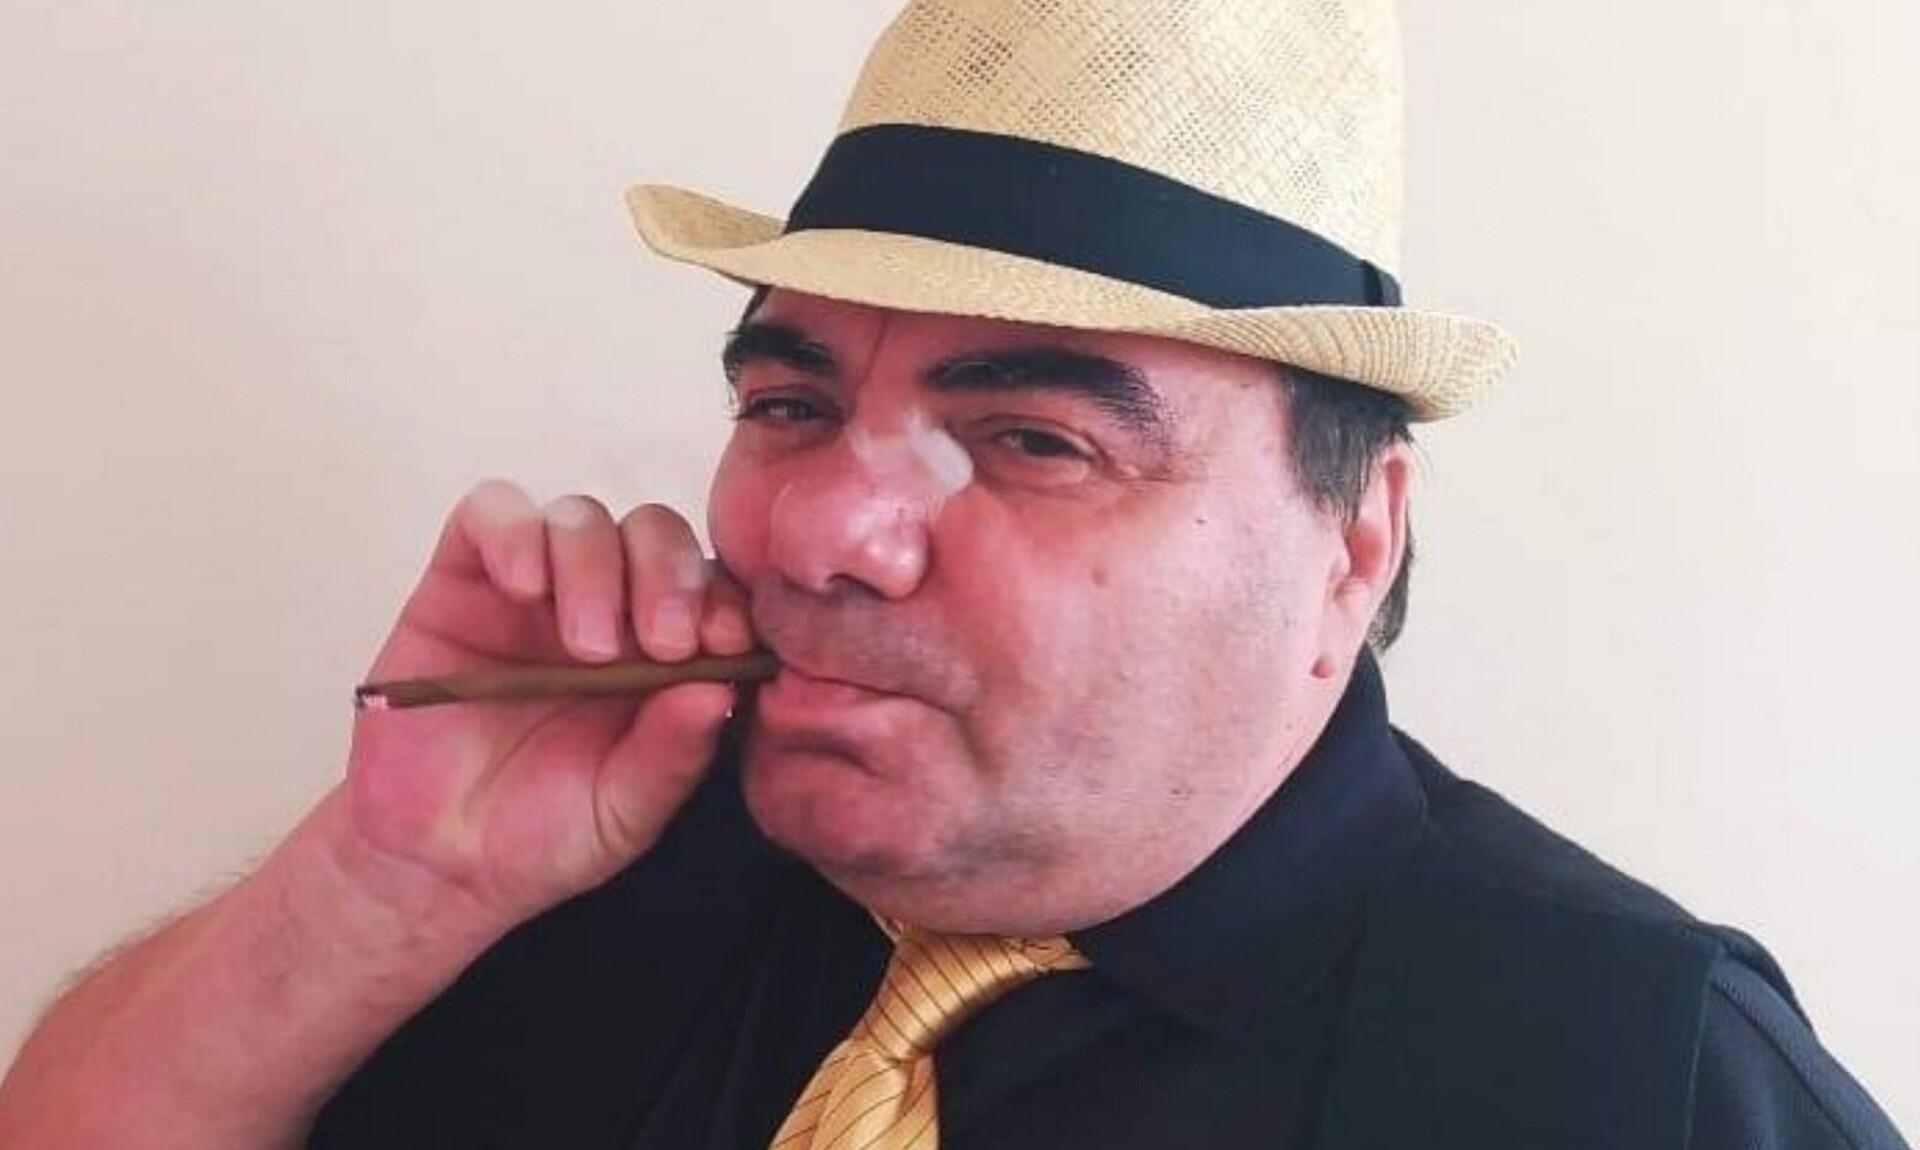 Μανώλης Γεωργιάδης: Πέθανε πάνω στη σκηνή ο ηθοποιός - Ακυρώθηκαν όλες οι παραστάσεις του θεάτρου